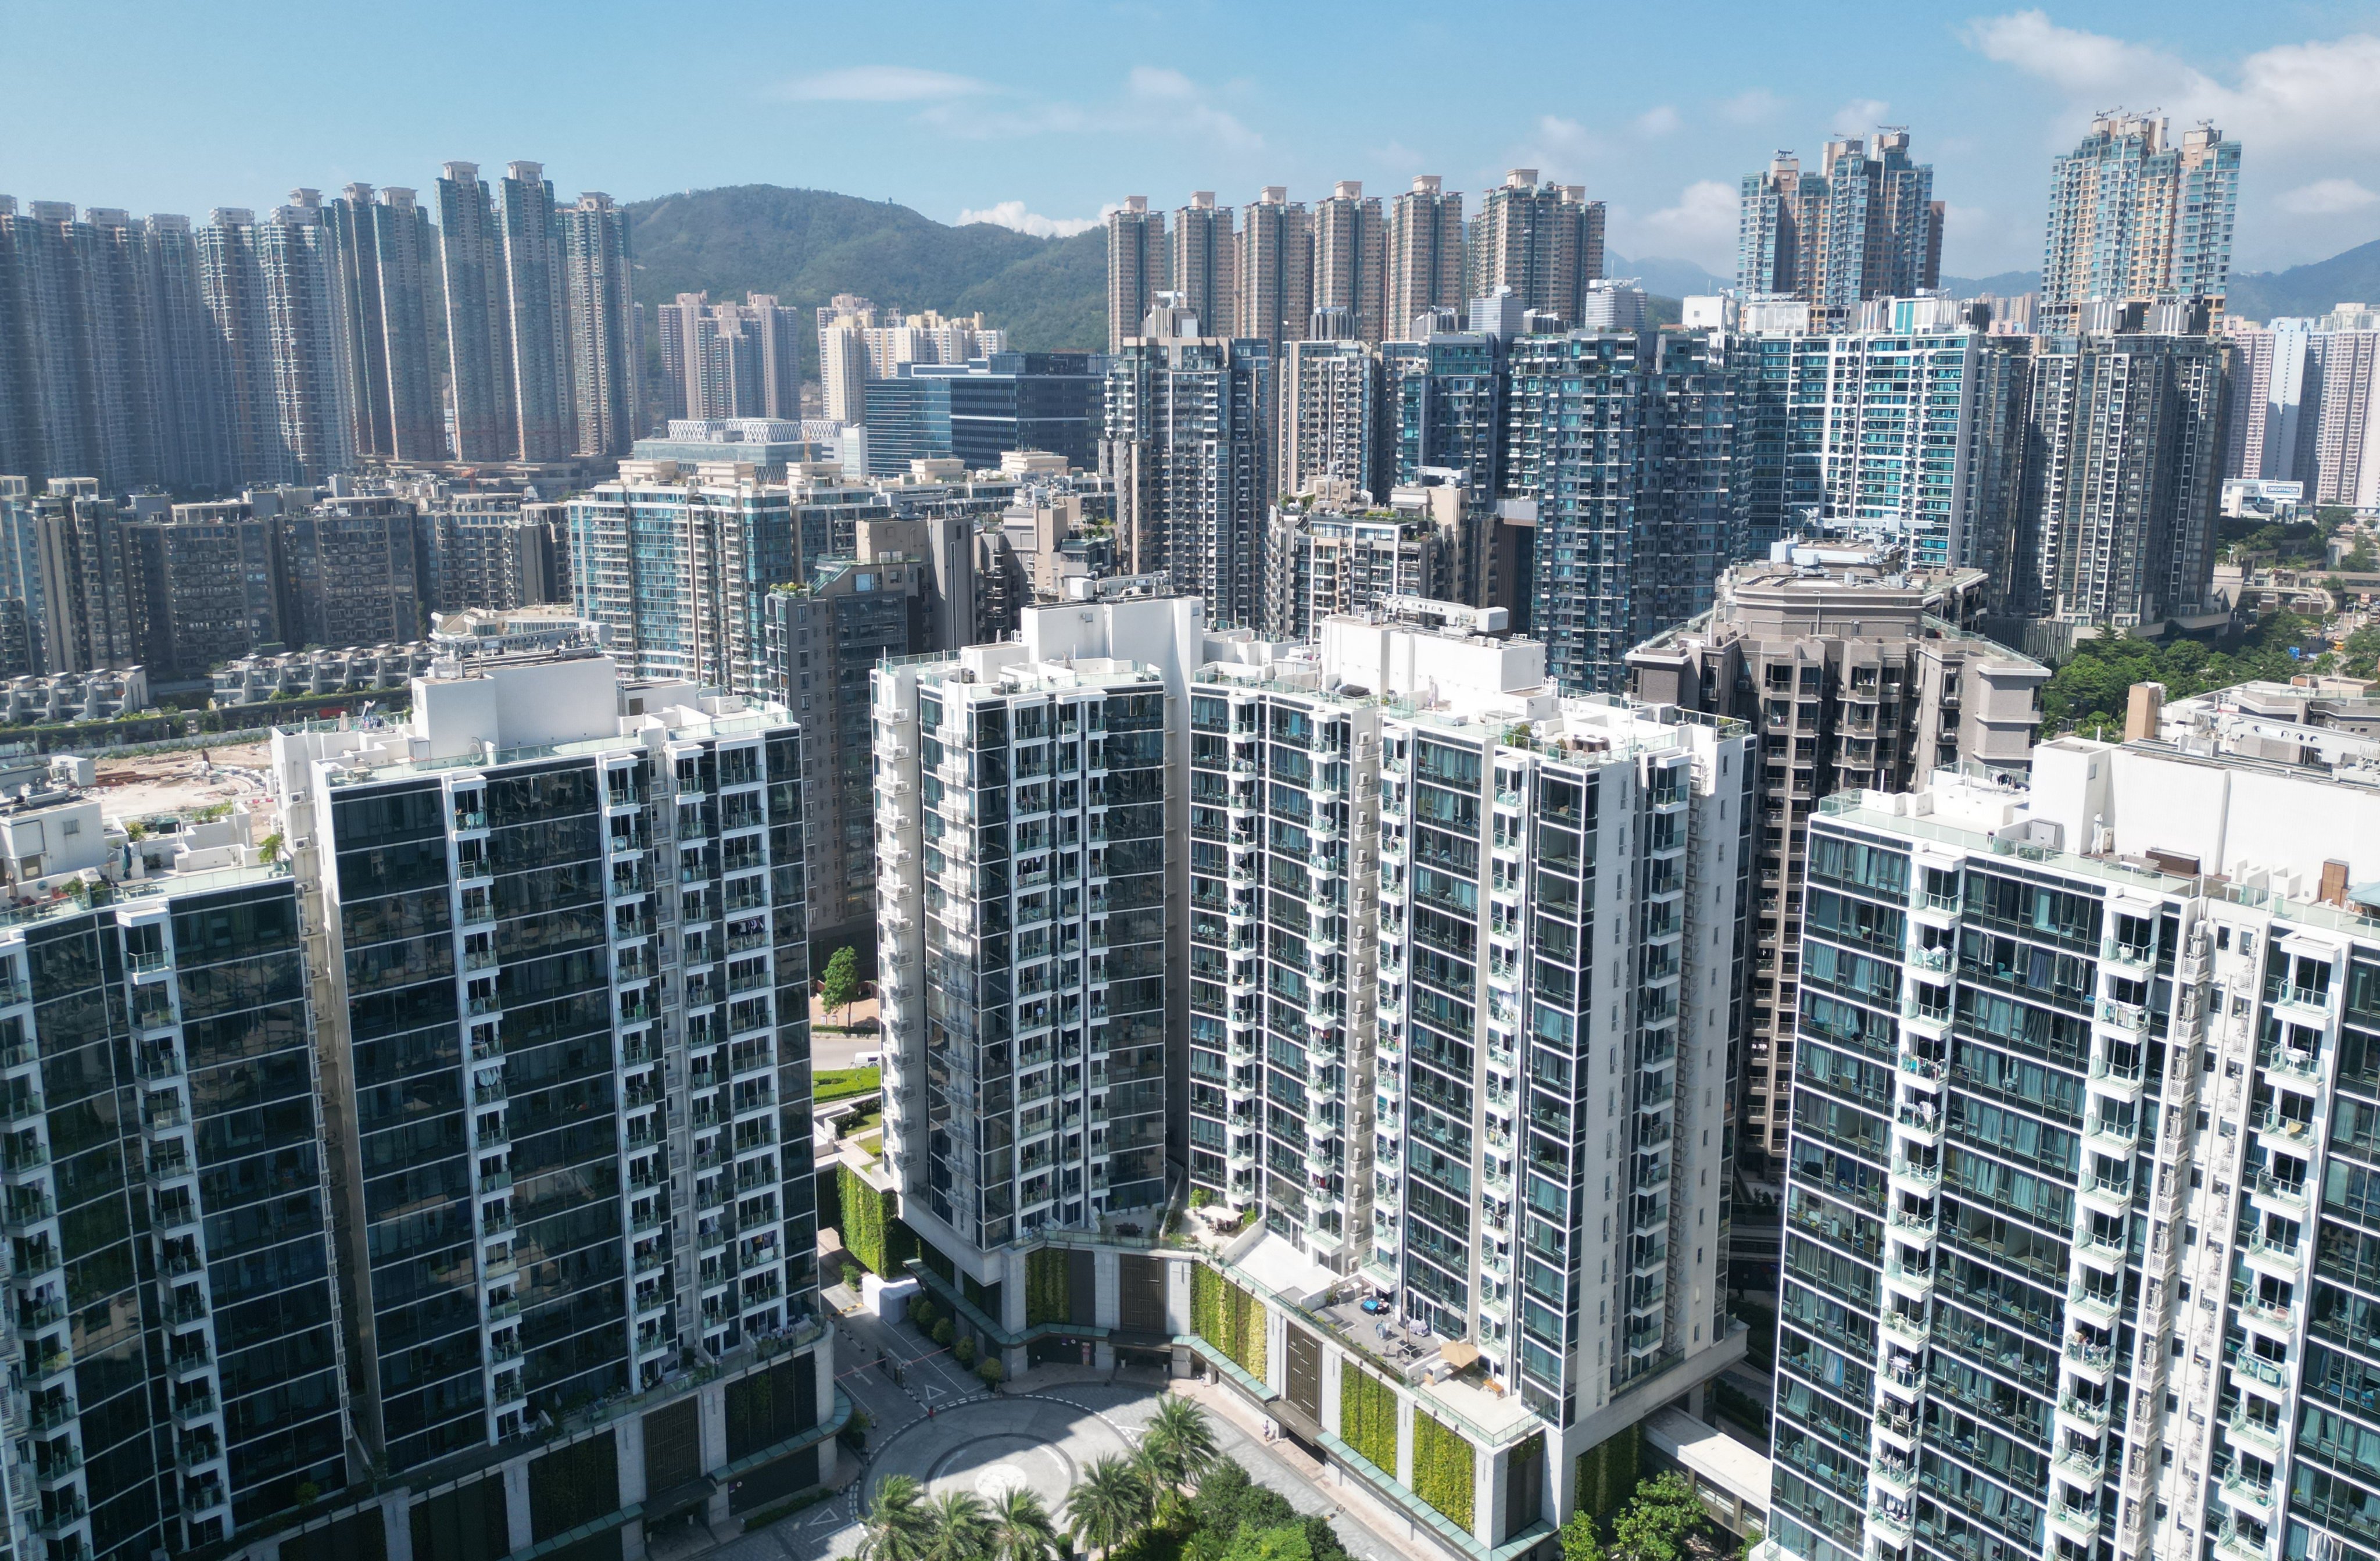 Property in Hong Kong is fast losing value. Photo: May Tse